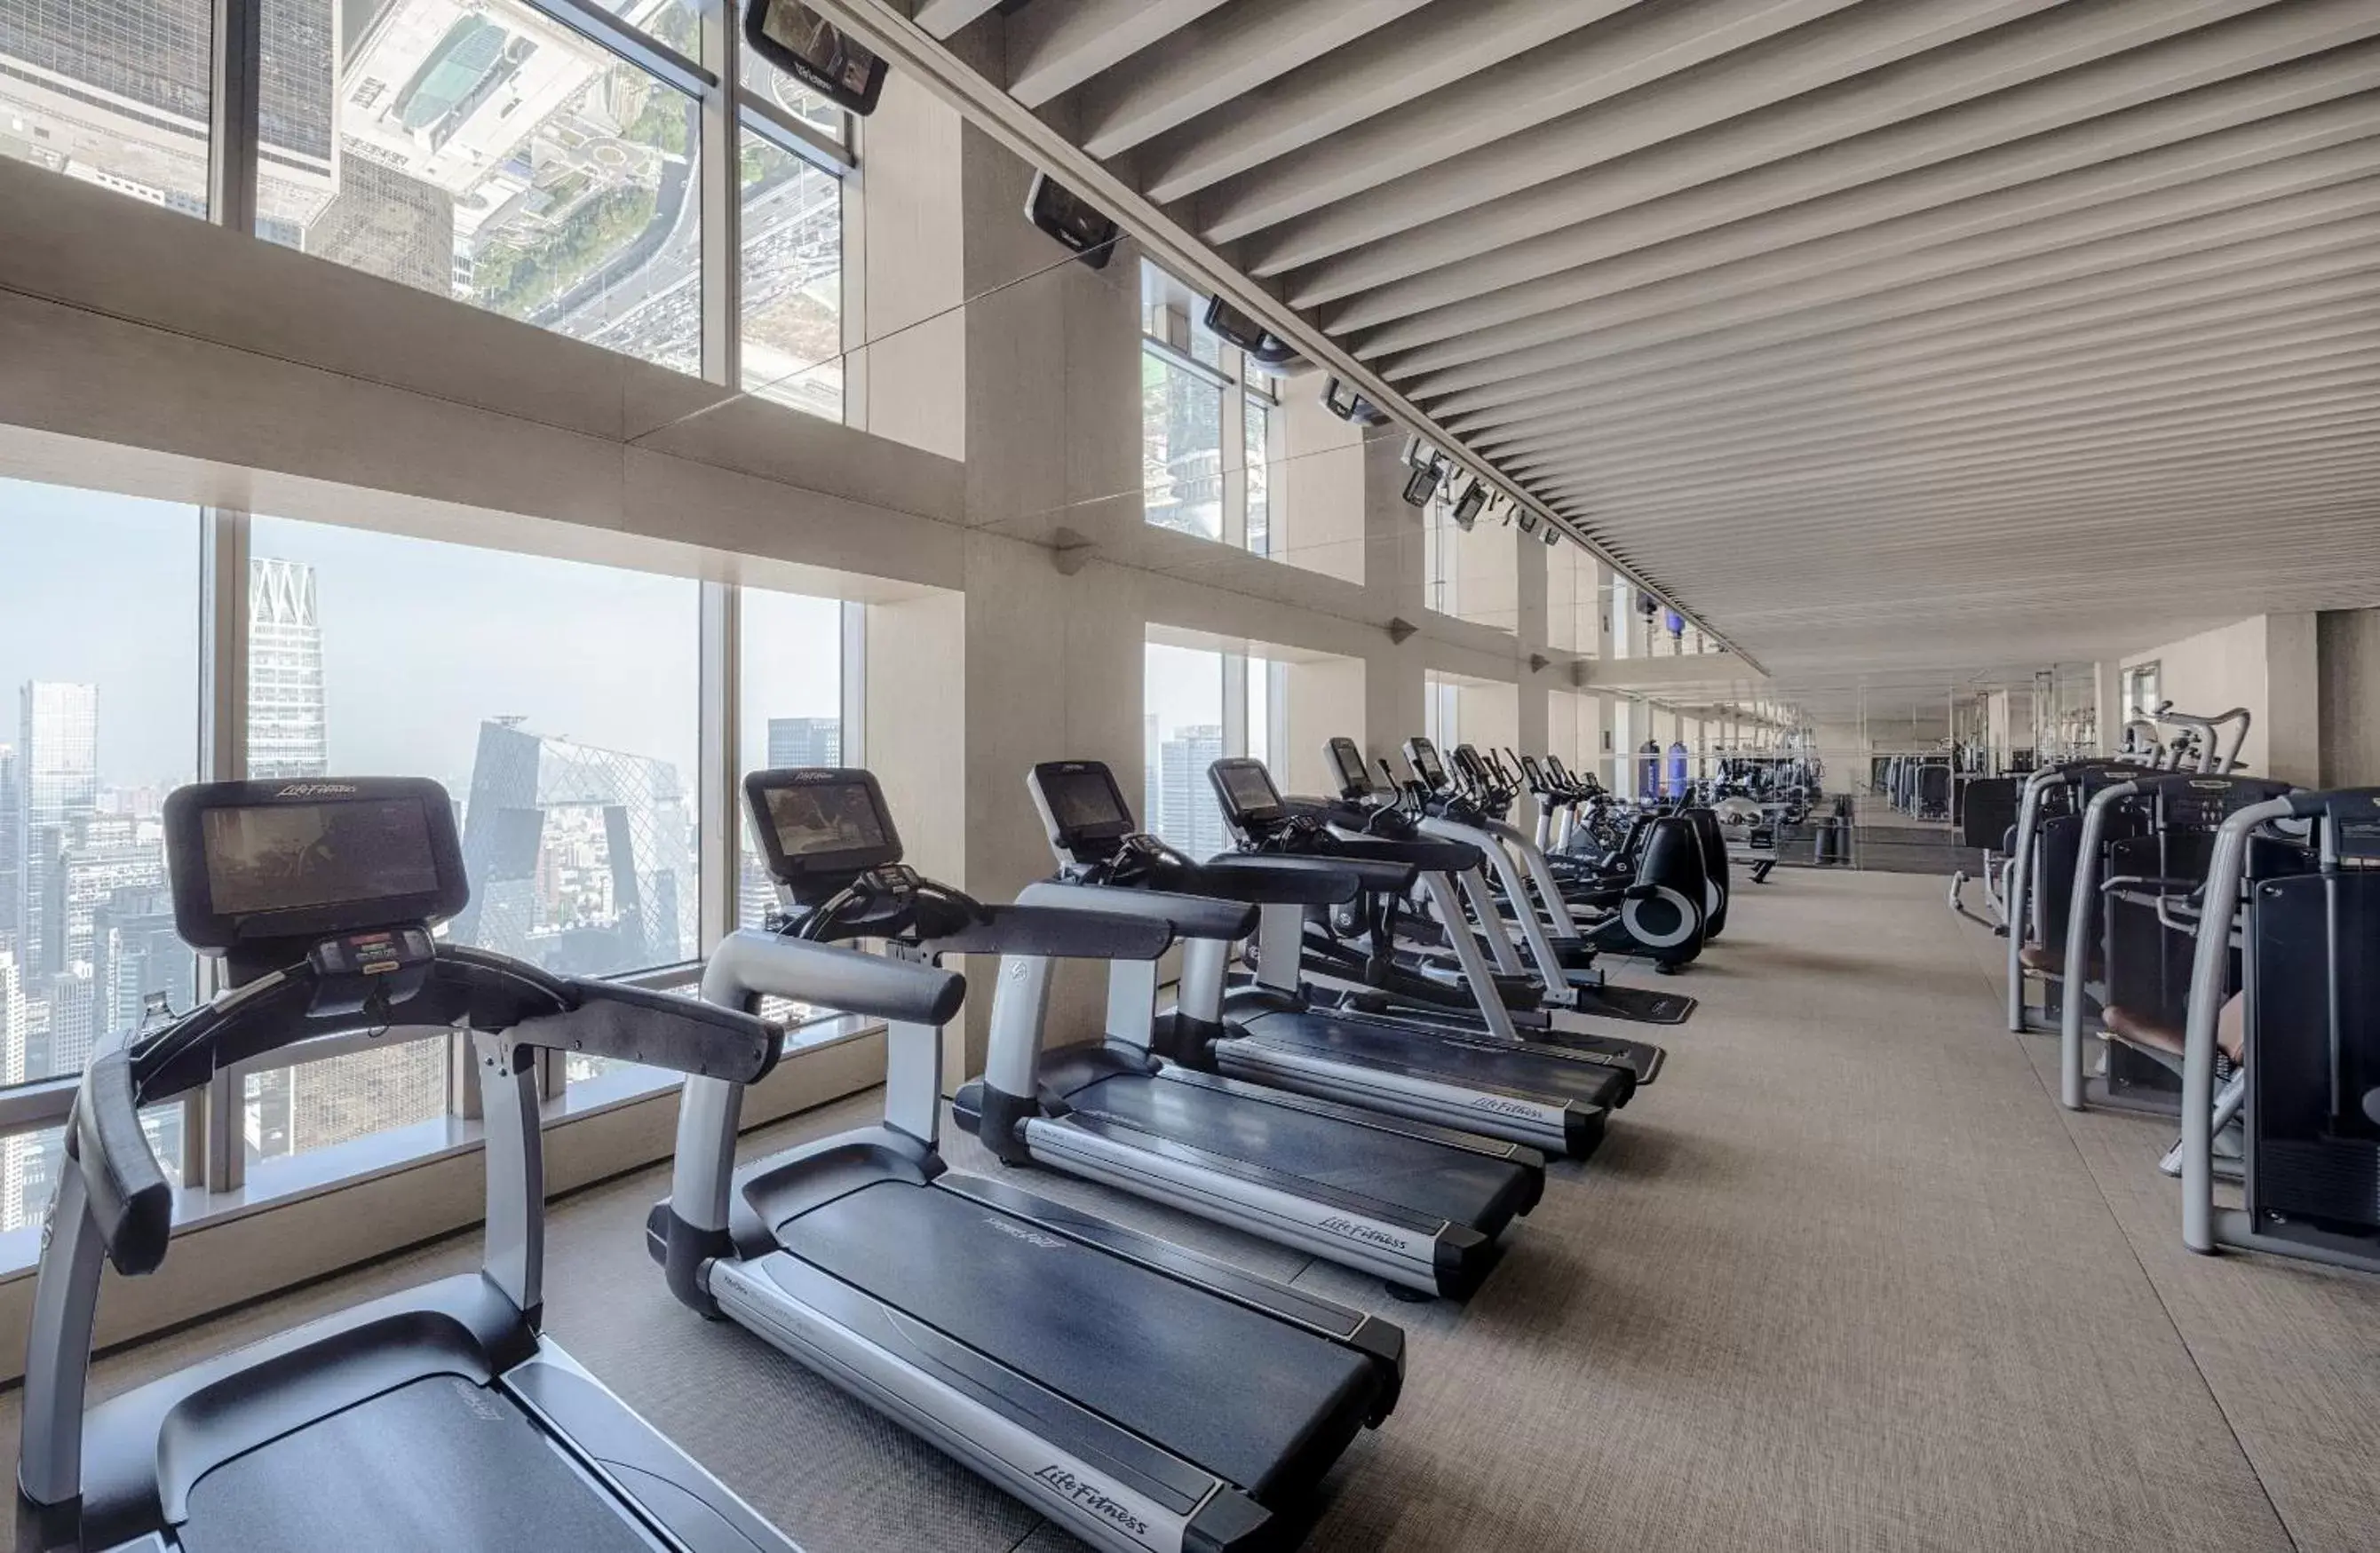 Fitness Center/Facilities in Park Hyatt Beijing